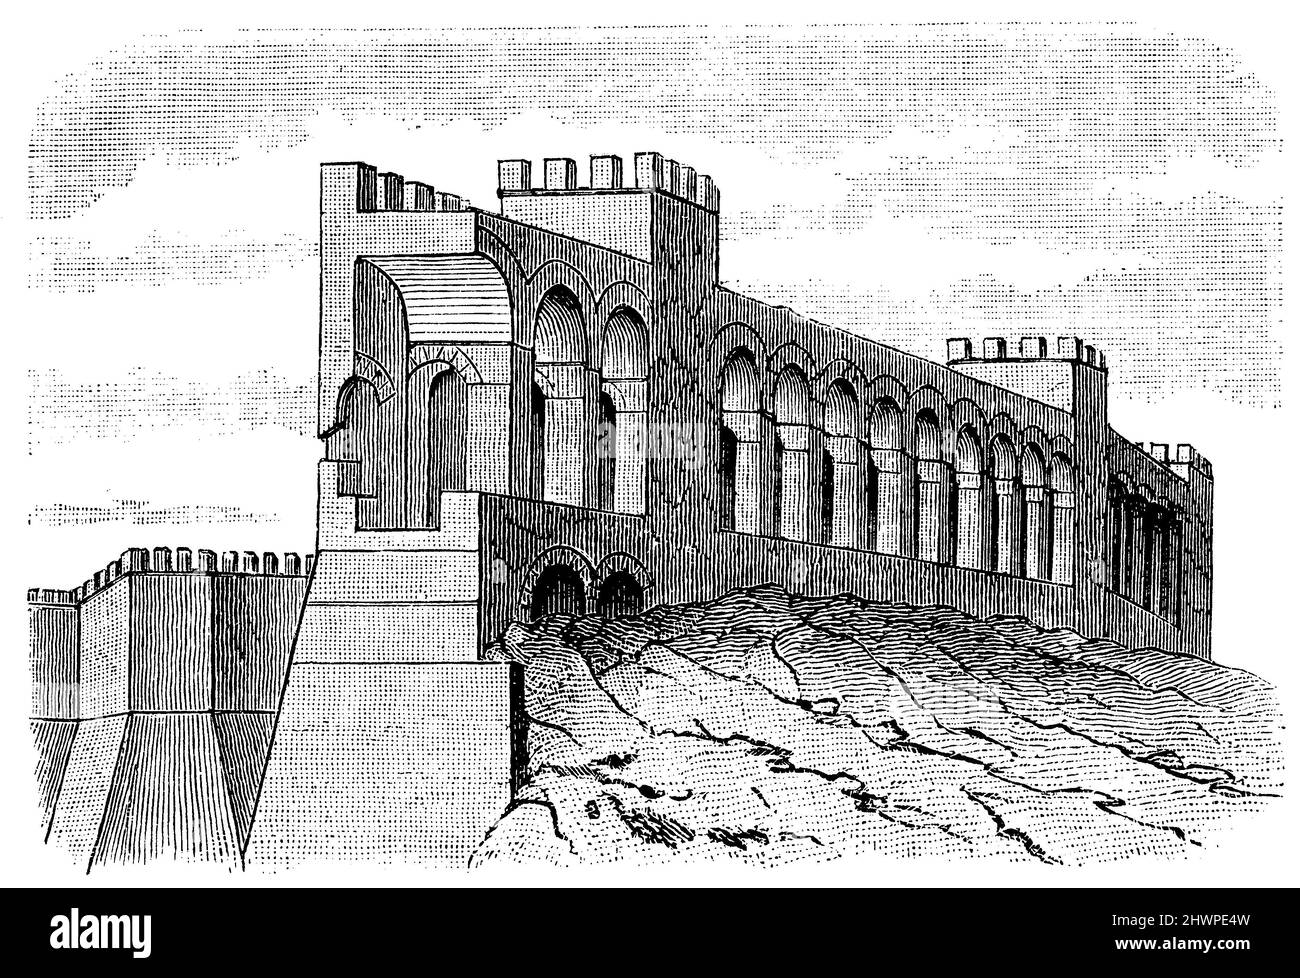 Partie des remparts de la forteresse de Rome vers 540 A.D., , (encyclopédie, 1893), Teil der Festungsmauern Roms UM 540 n. CHR., Partie des remparts de Rome vers 540 après J.-C. Banque D'Images